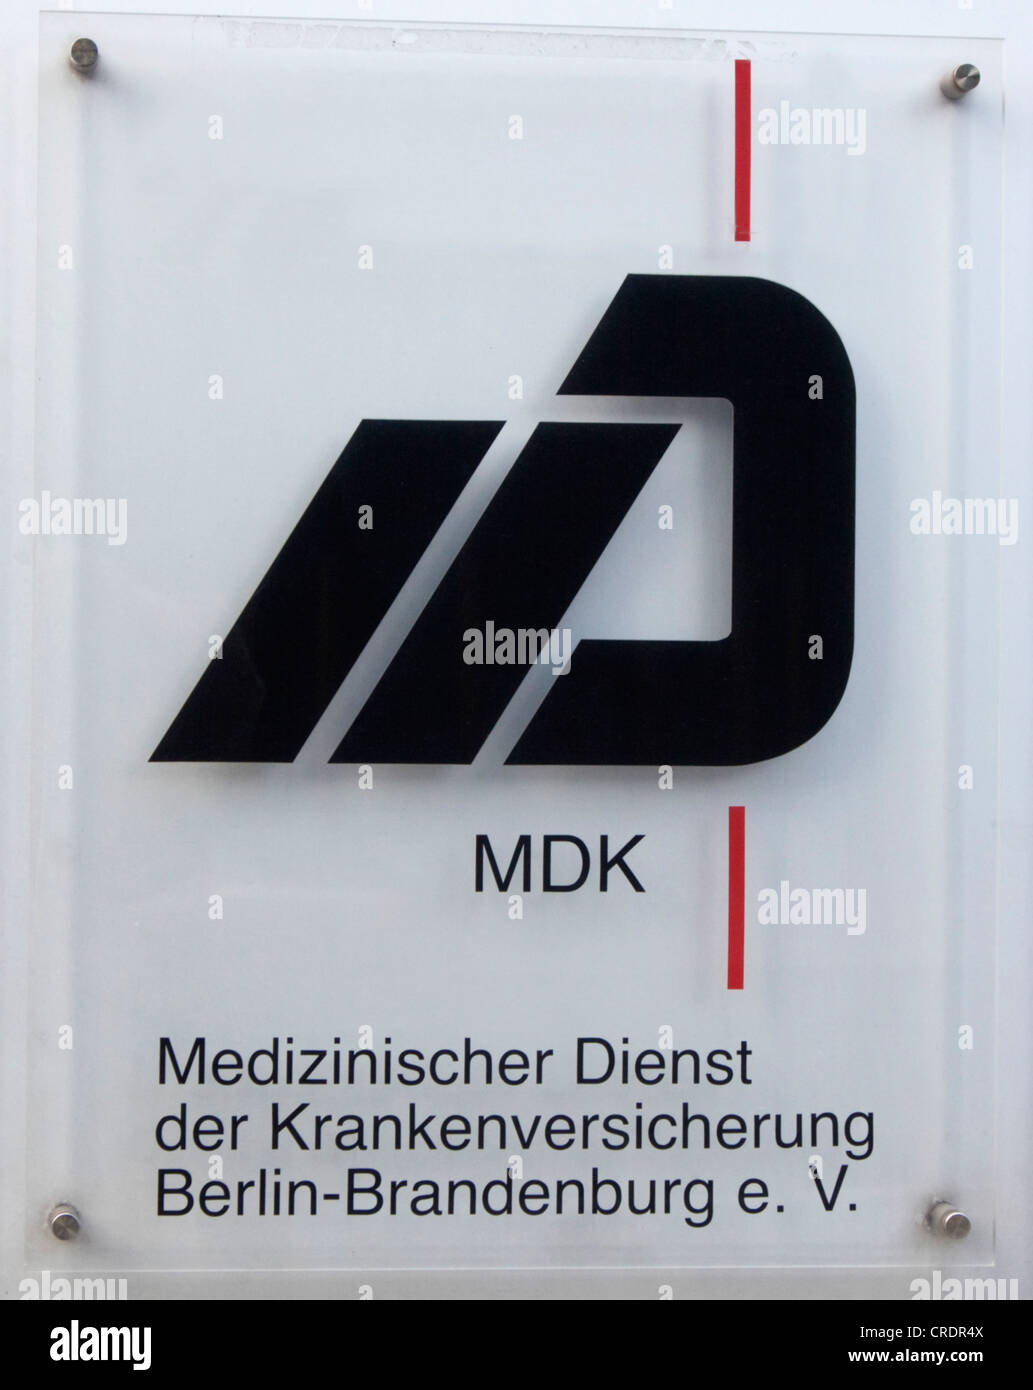 Signer, MDK, 'Medizinischer Dienst der Krankenversicherung Berlin-Brandenburg e.V.', l'allemand pour 'Medical santé services Banque D'Images